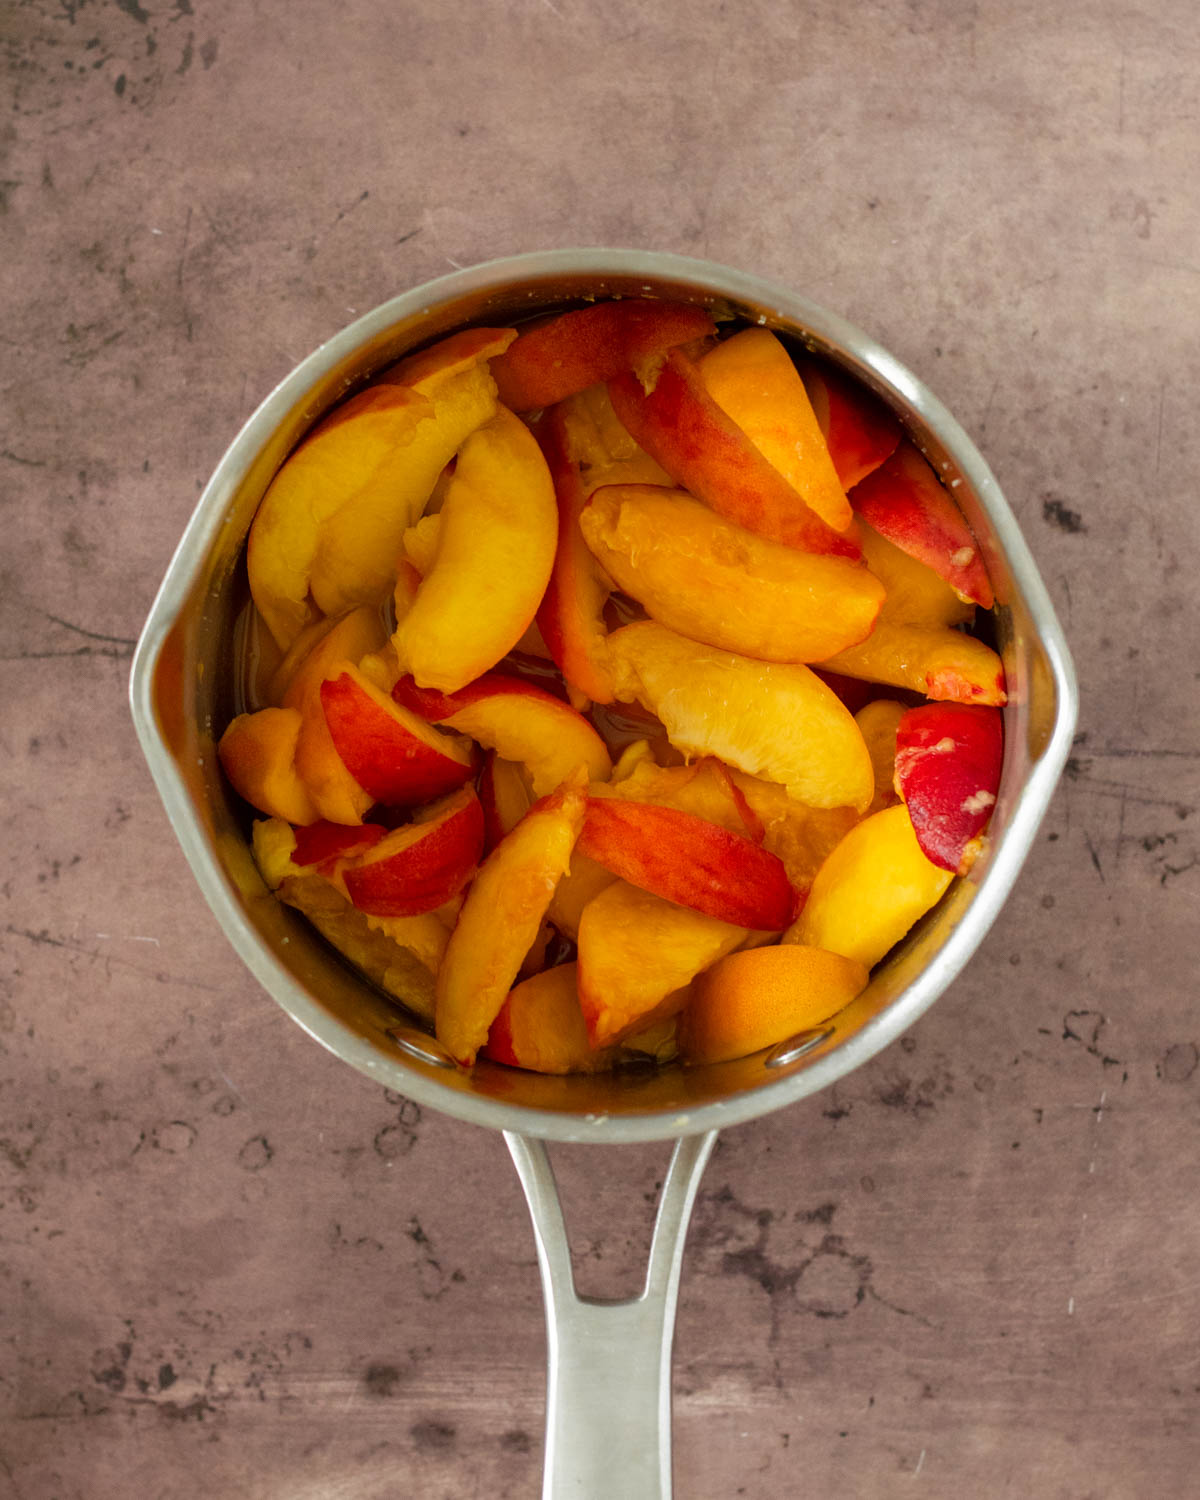 Step 2. Boil the peaches